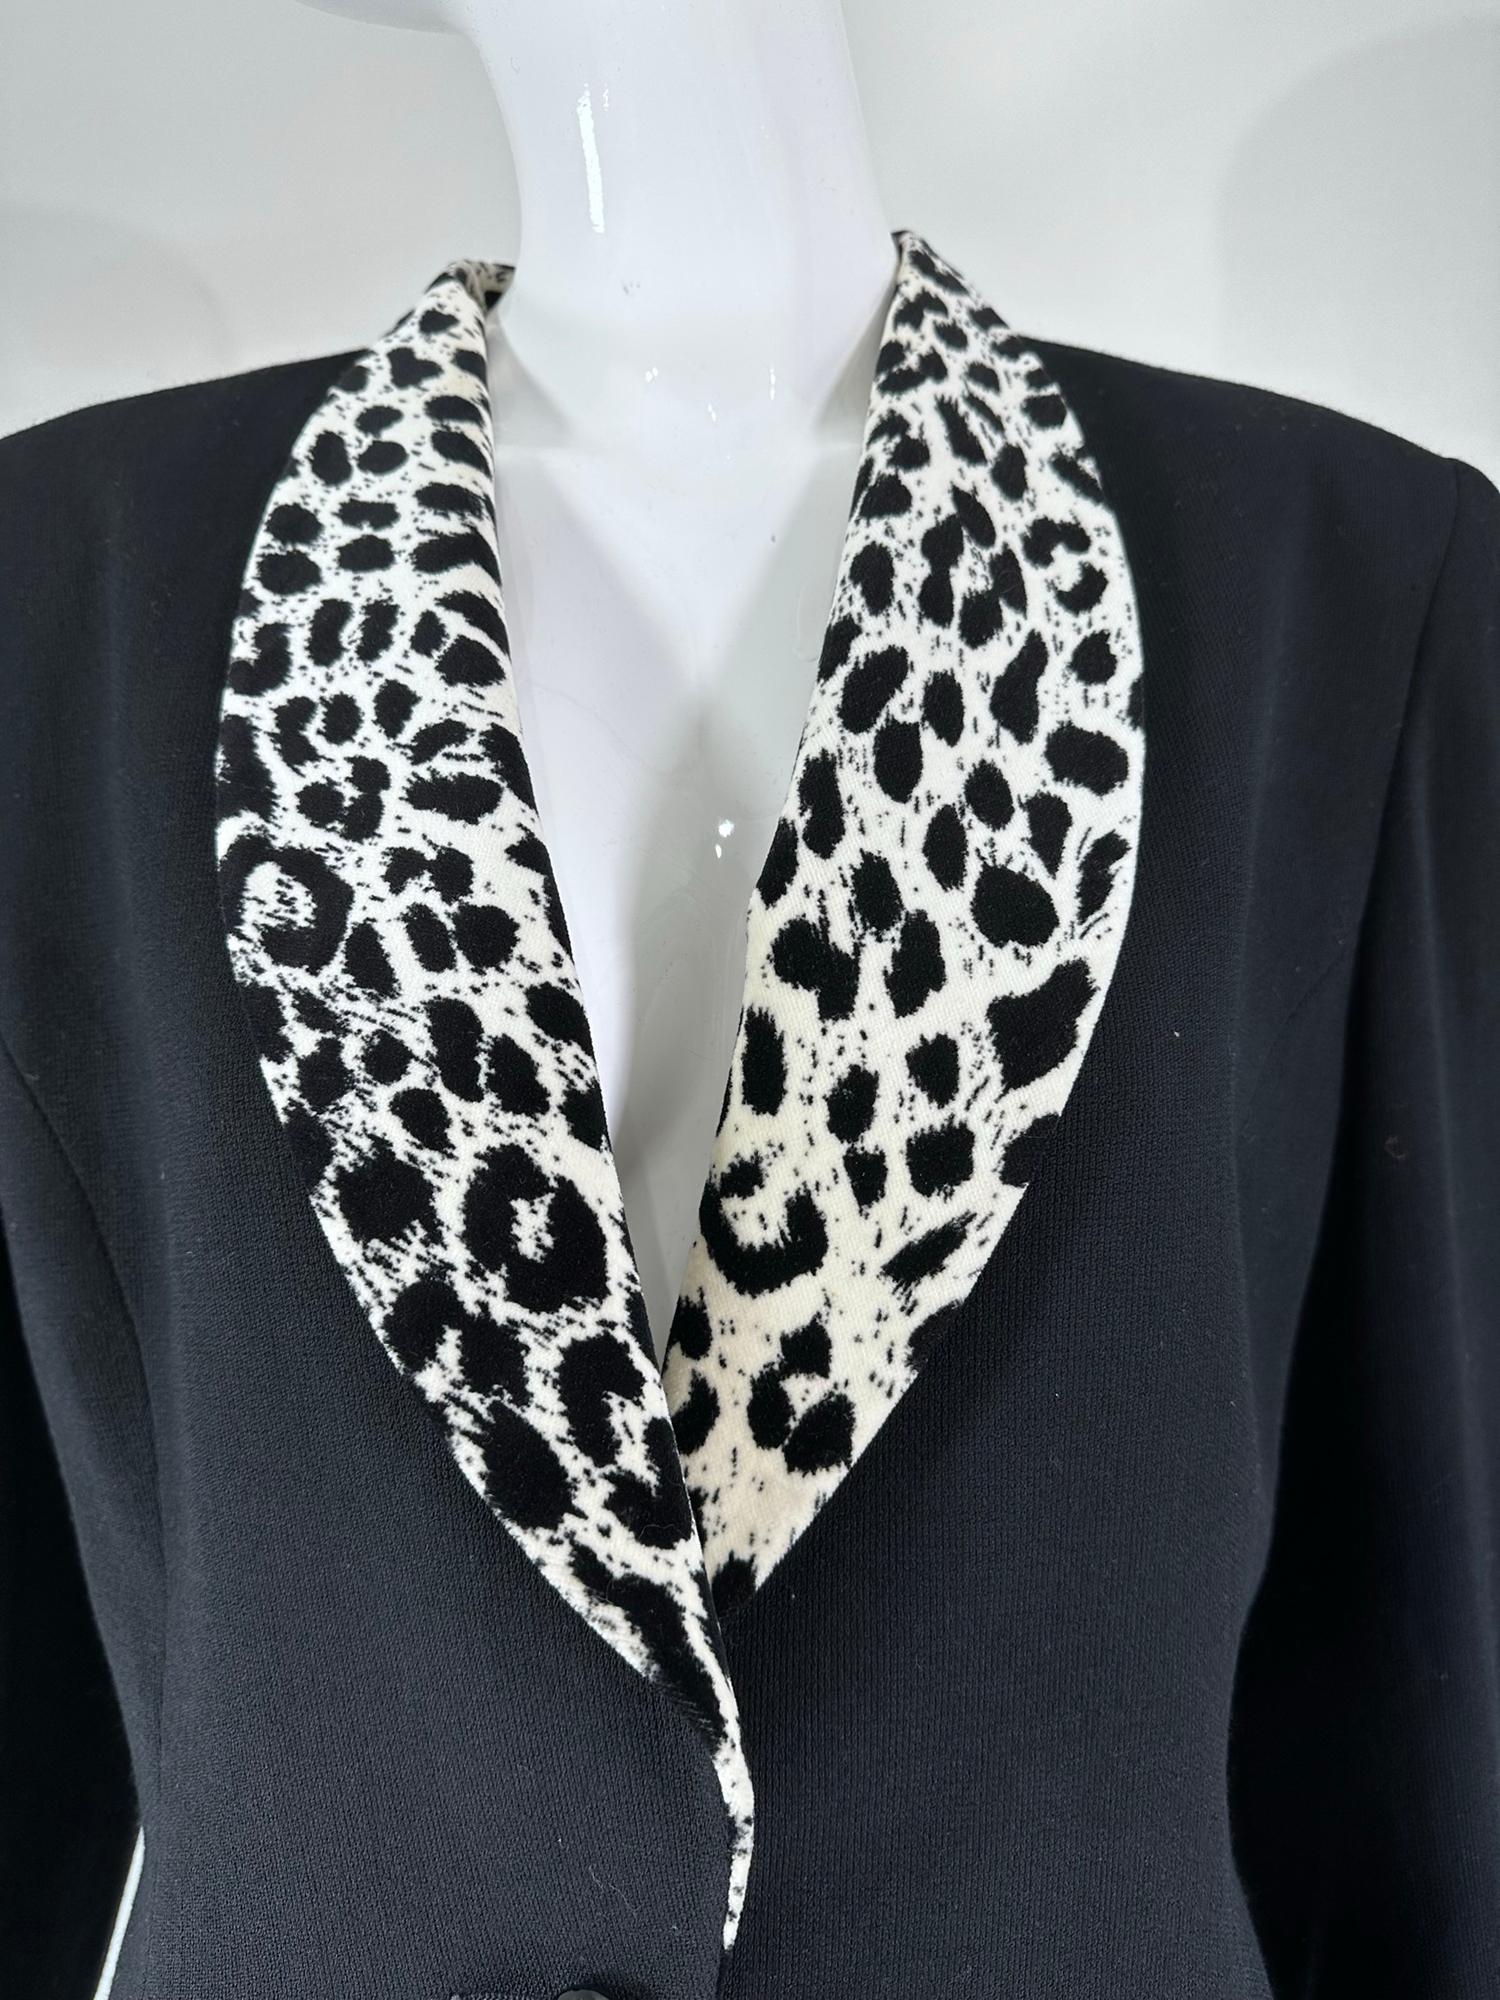 Christian Dior Black Princess Seam Tuxedo Jacket Black White Velvet Lapels 1990s For Sale 7